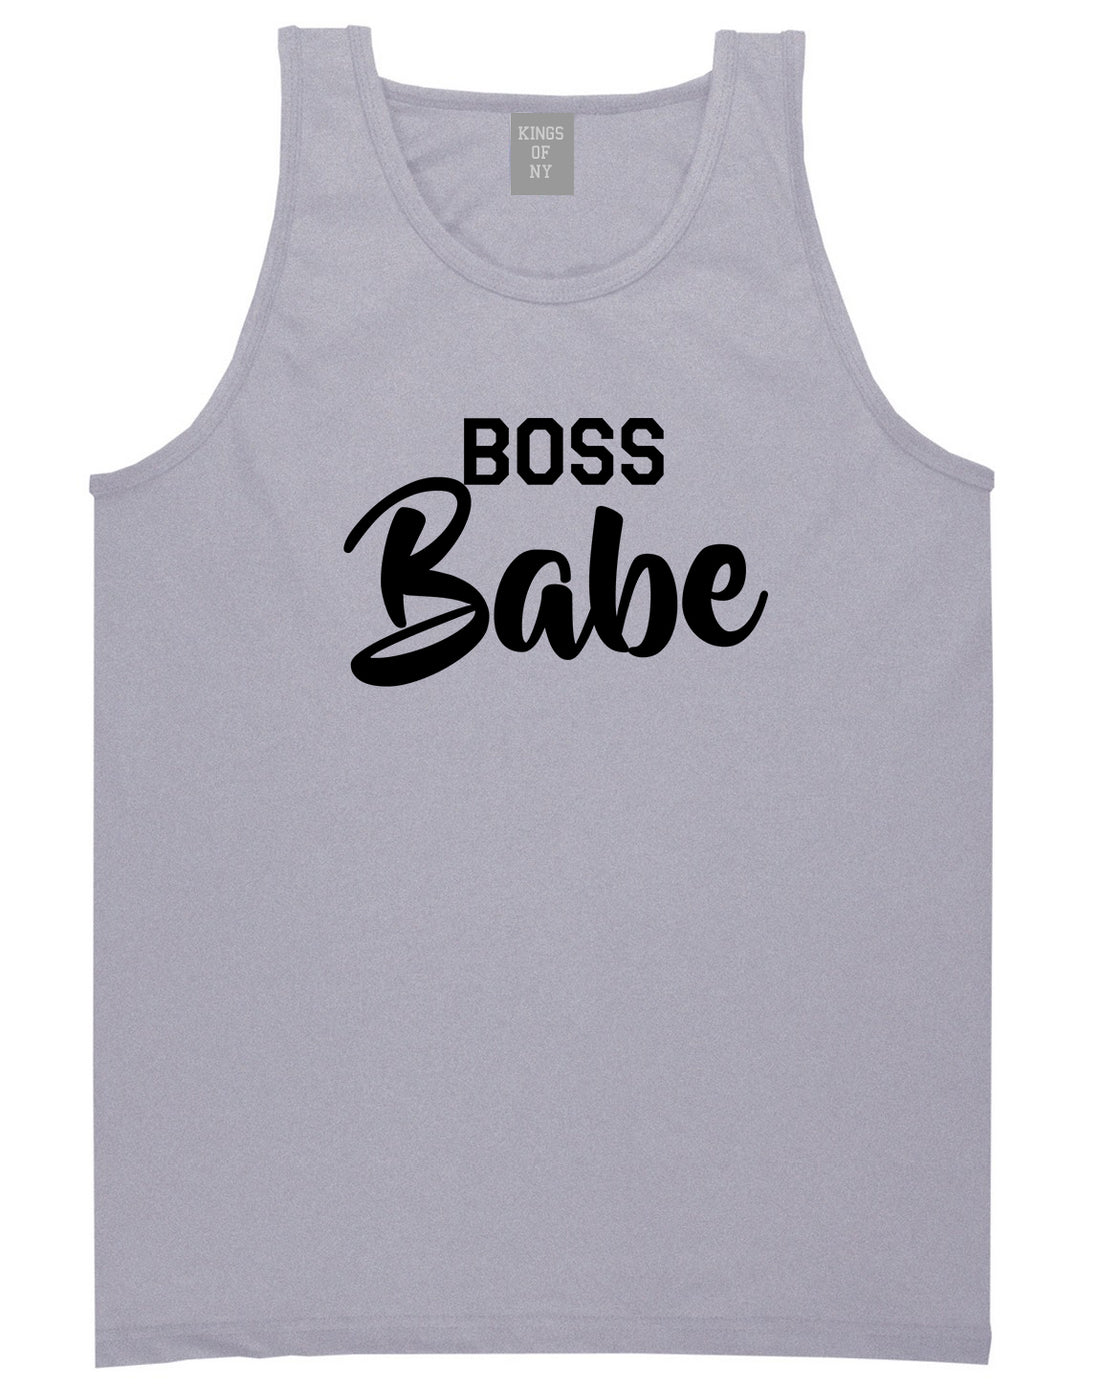 Boss Babe Mens Grey Tank Top Shirt by KINGS OF NY